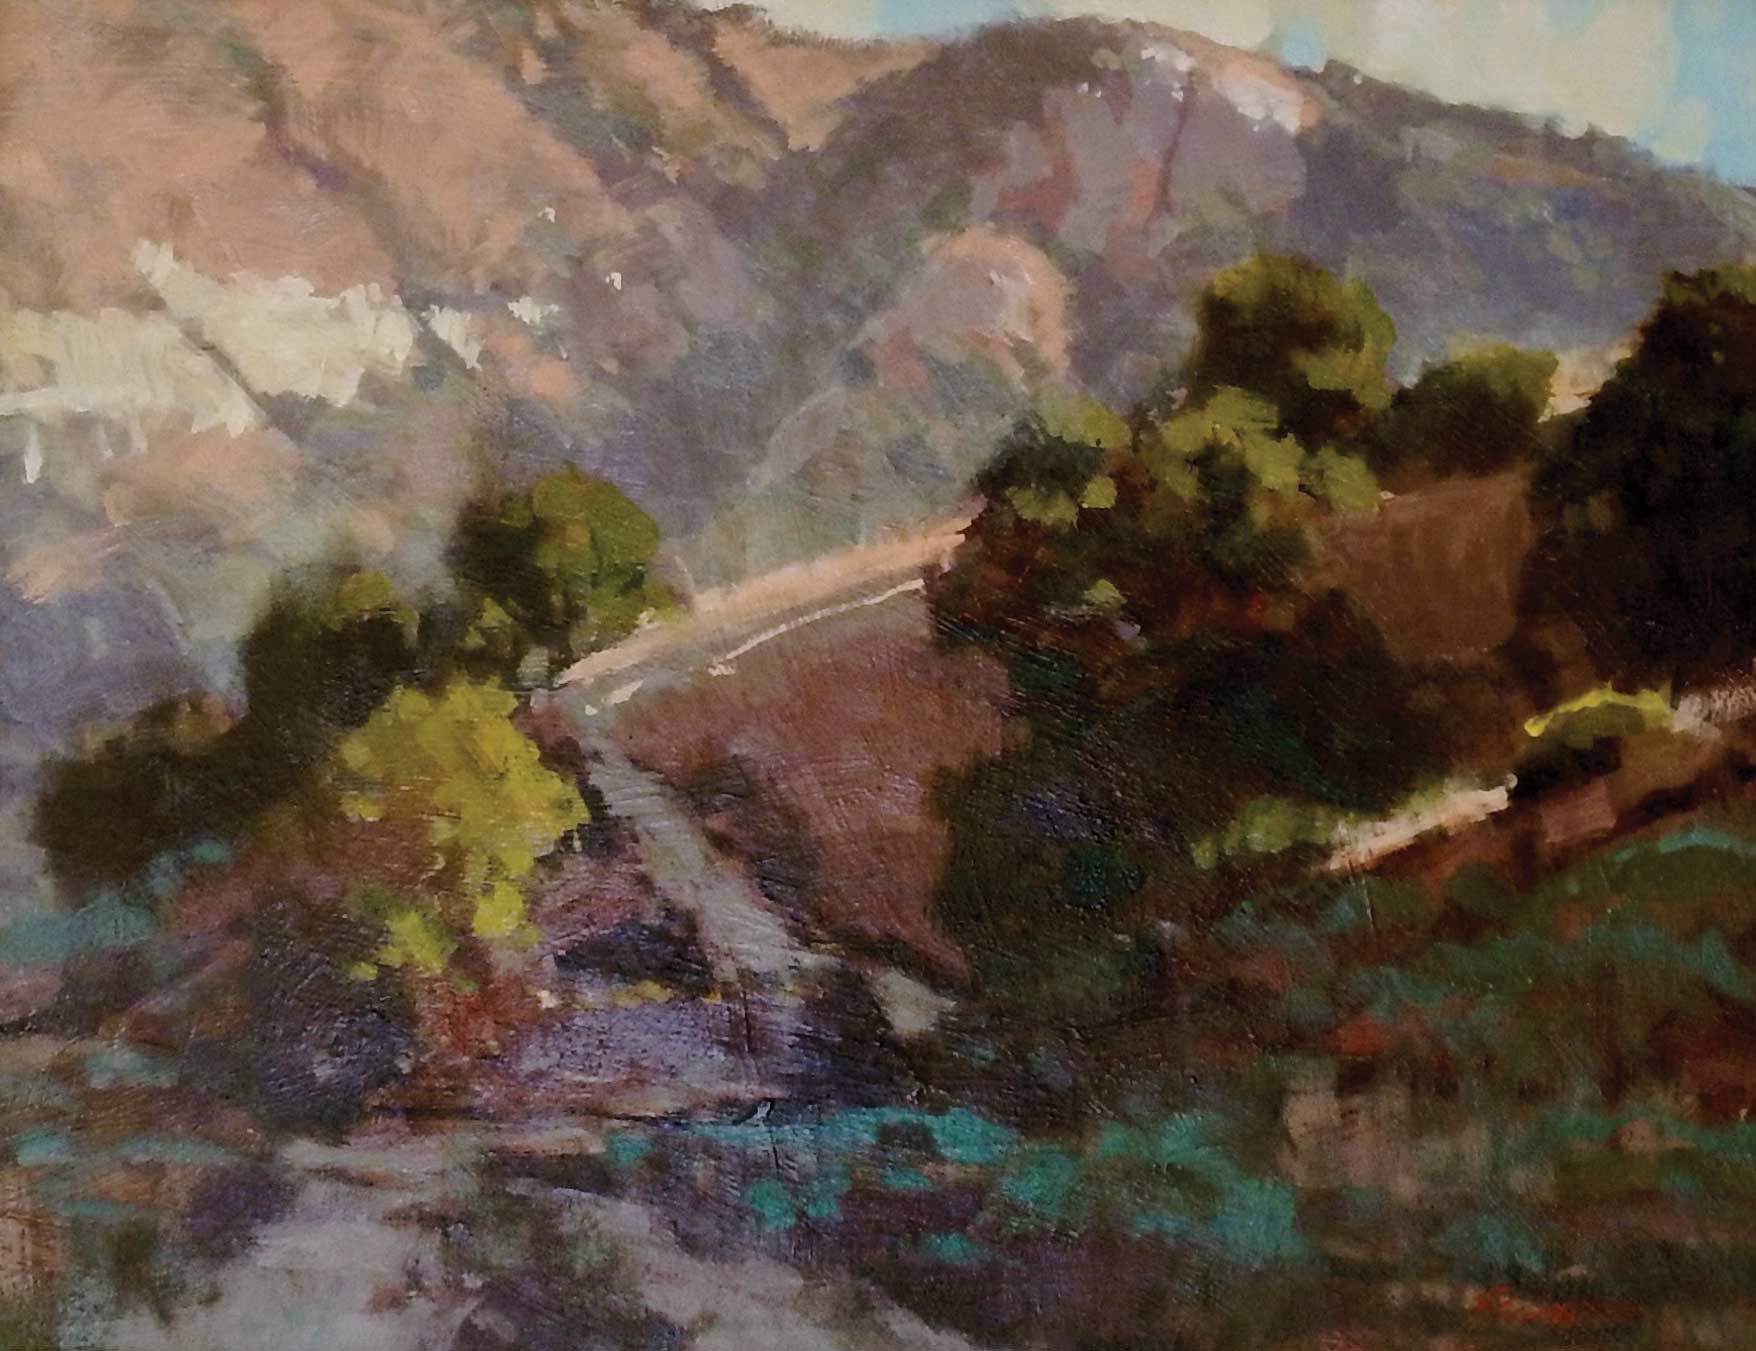 Randall Sexton, "Laguna Canyon," 2011, oil, 14 x 18 in., Plein air